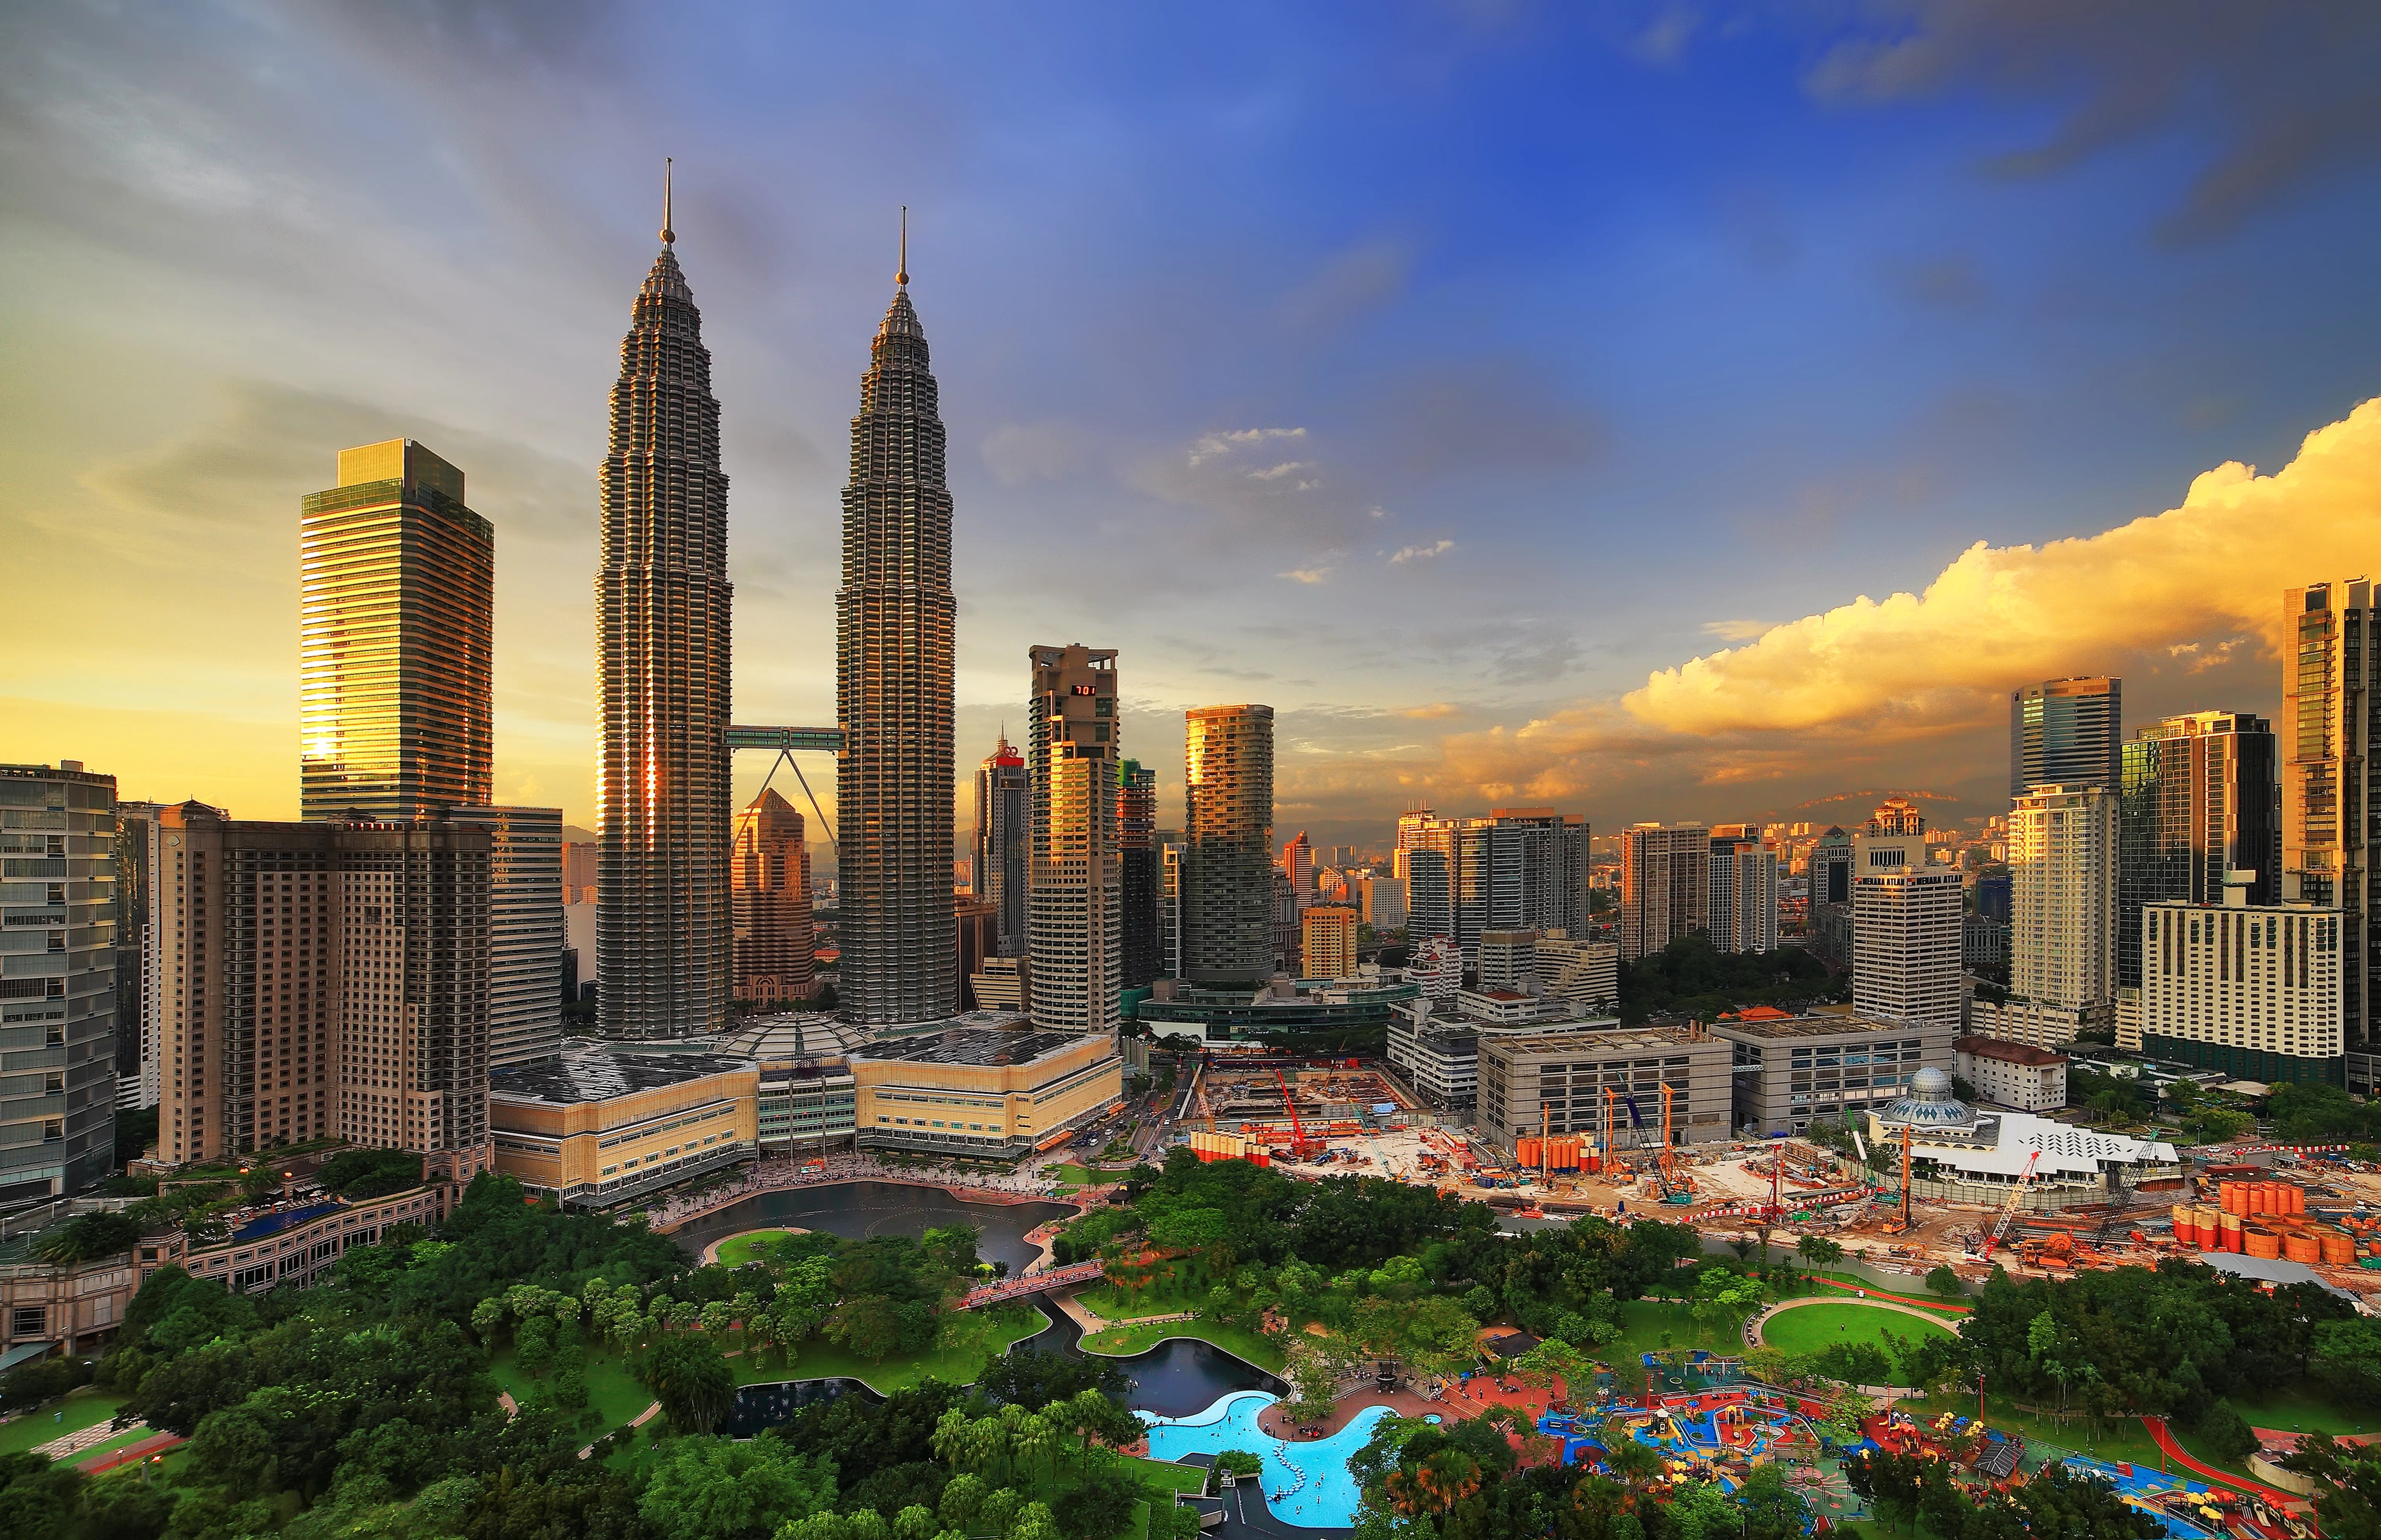 hvad er klokken i asien malaysia